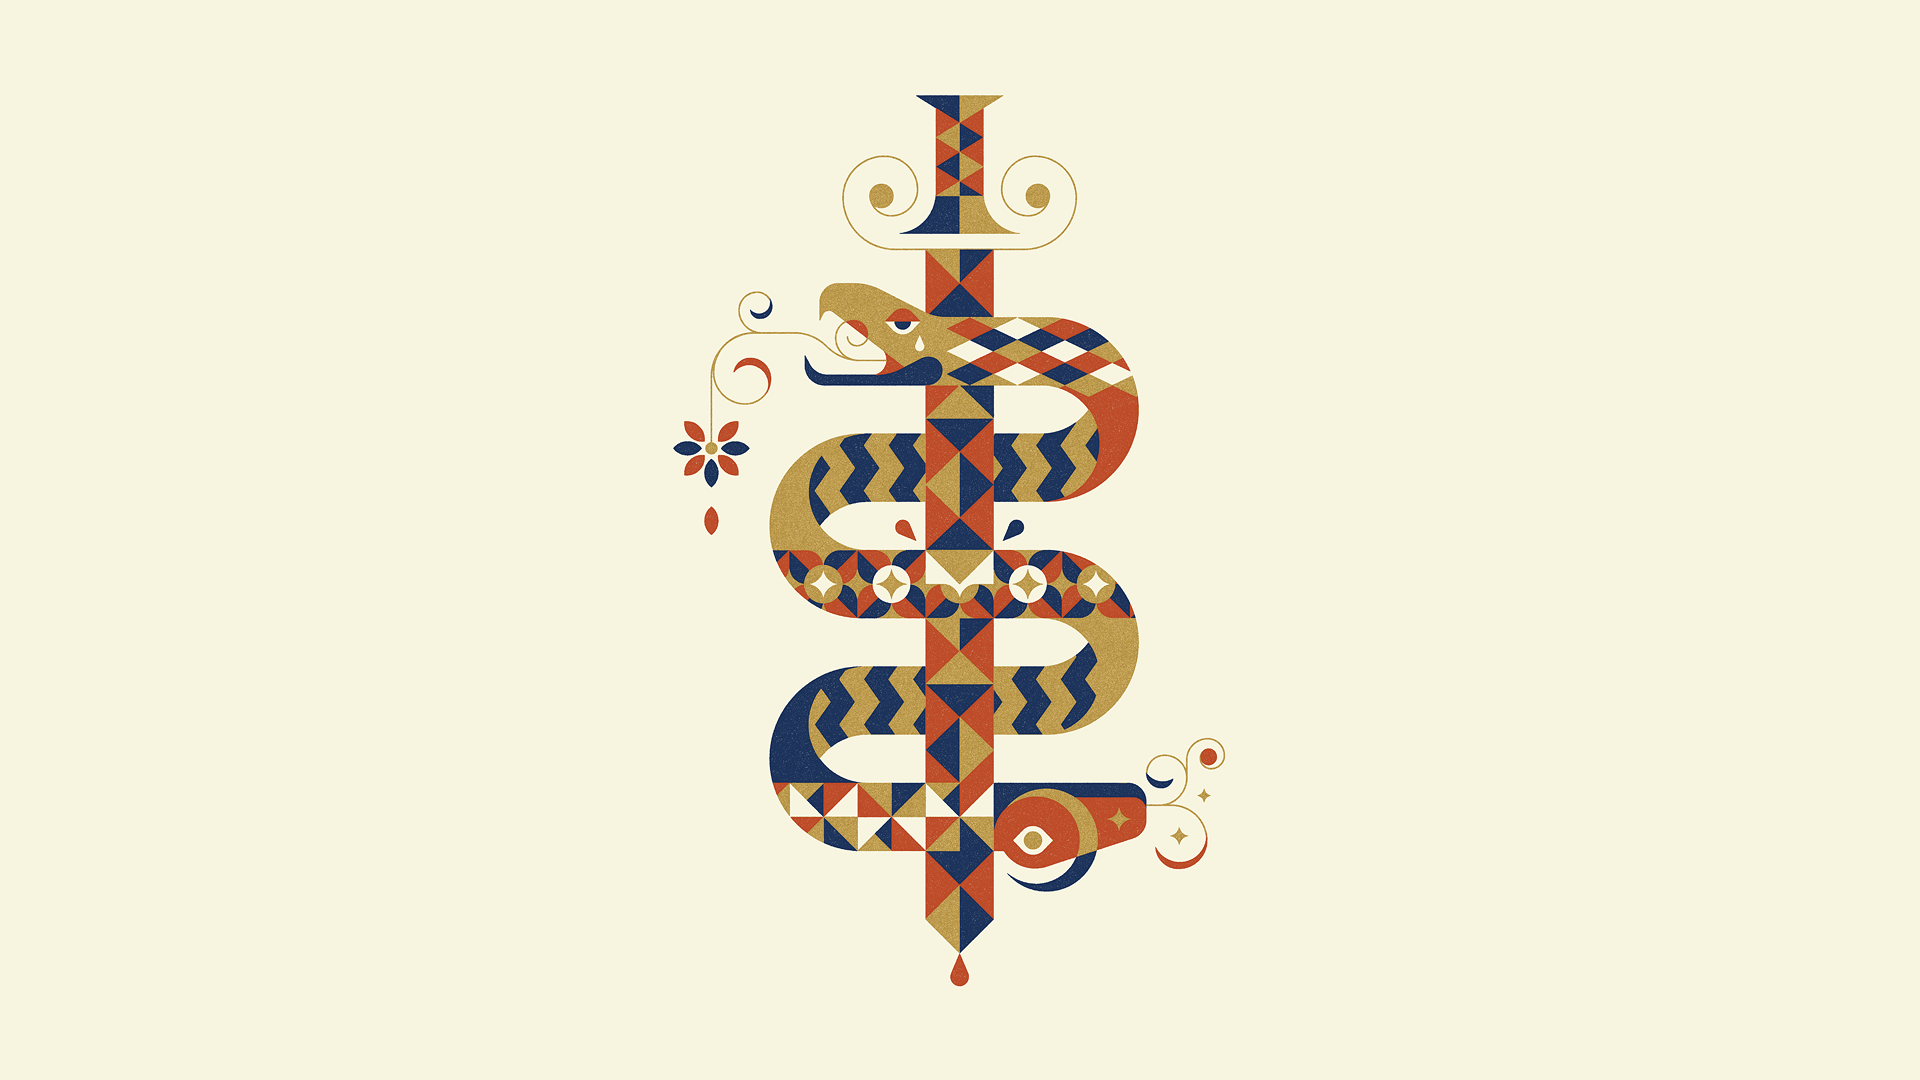 Snake Circle Logo - Wallpaper : illustration, minimalism, text, logo, snake, sword ...